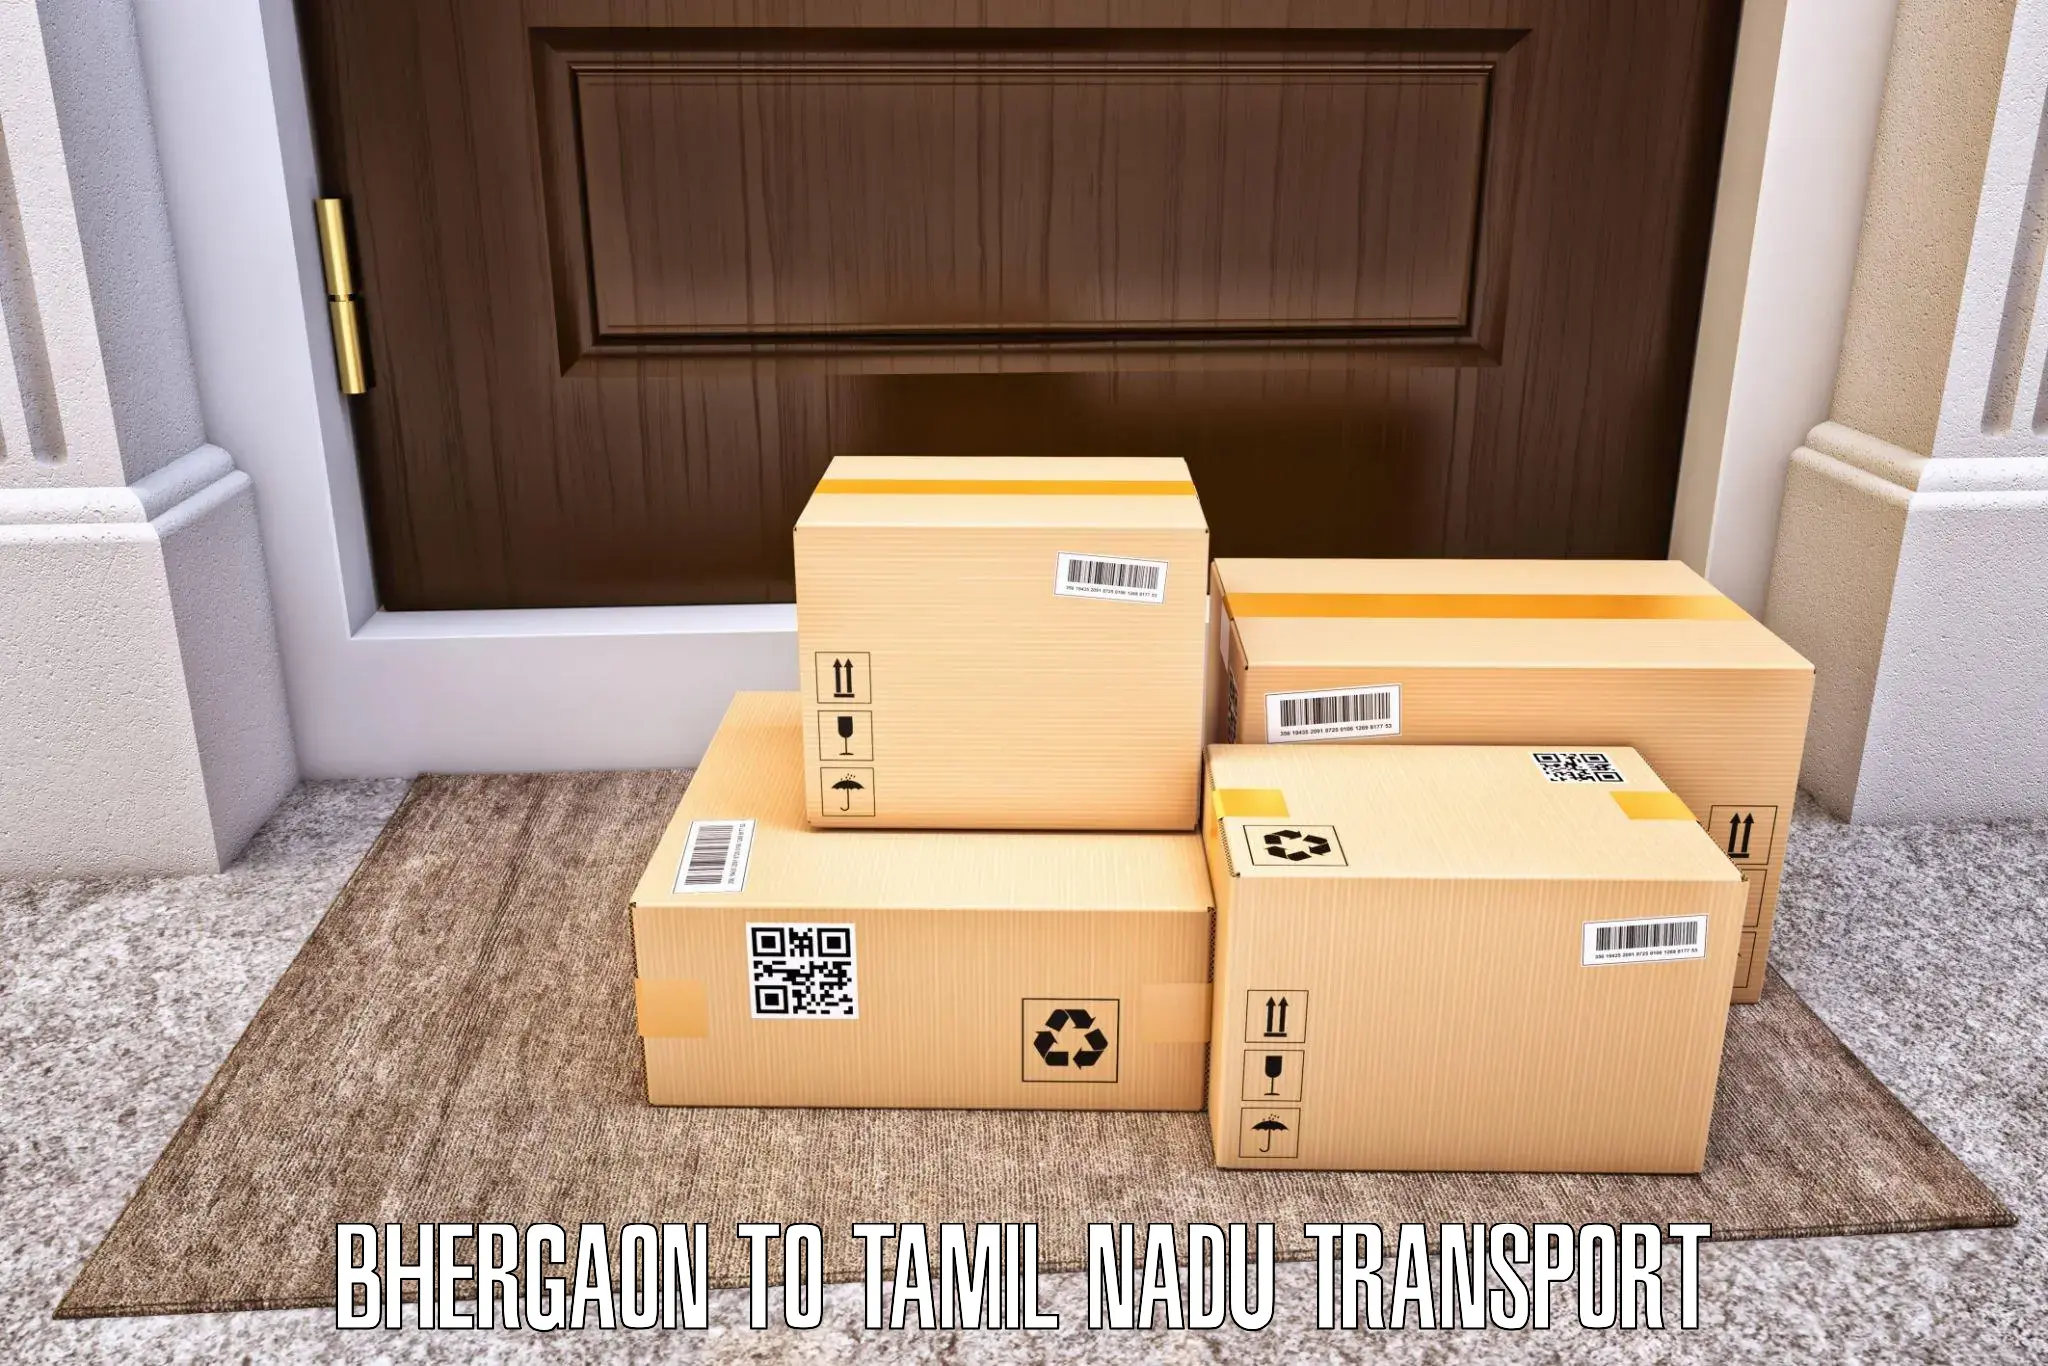 Online transport booking Bhergaon to Ambasamudram